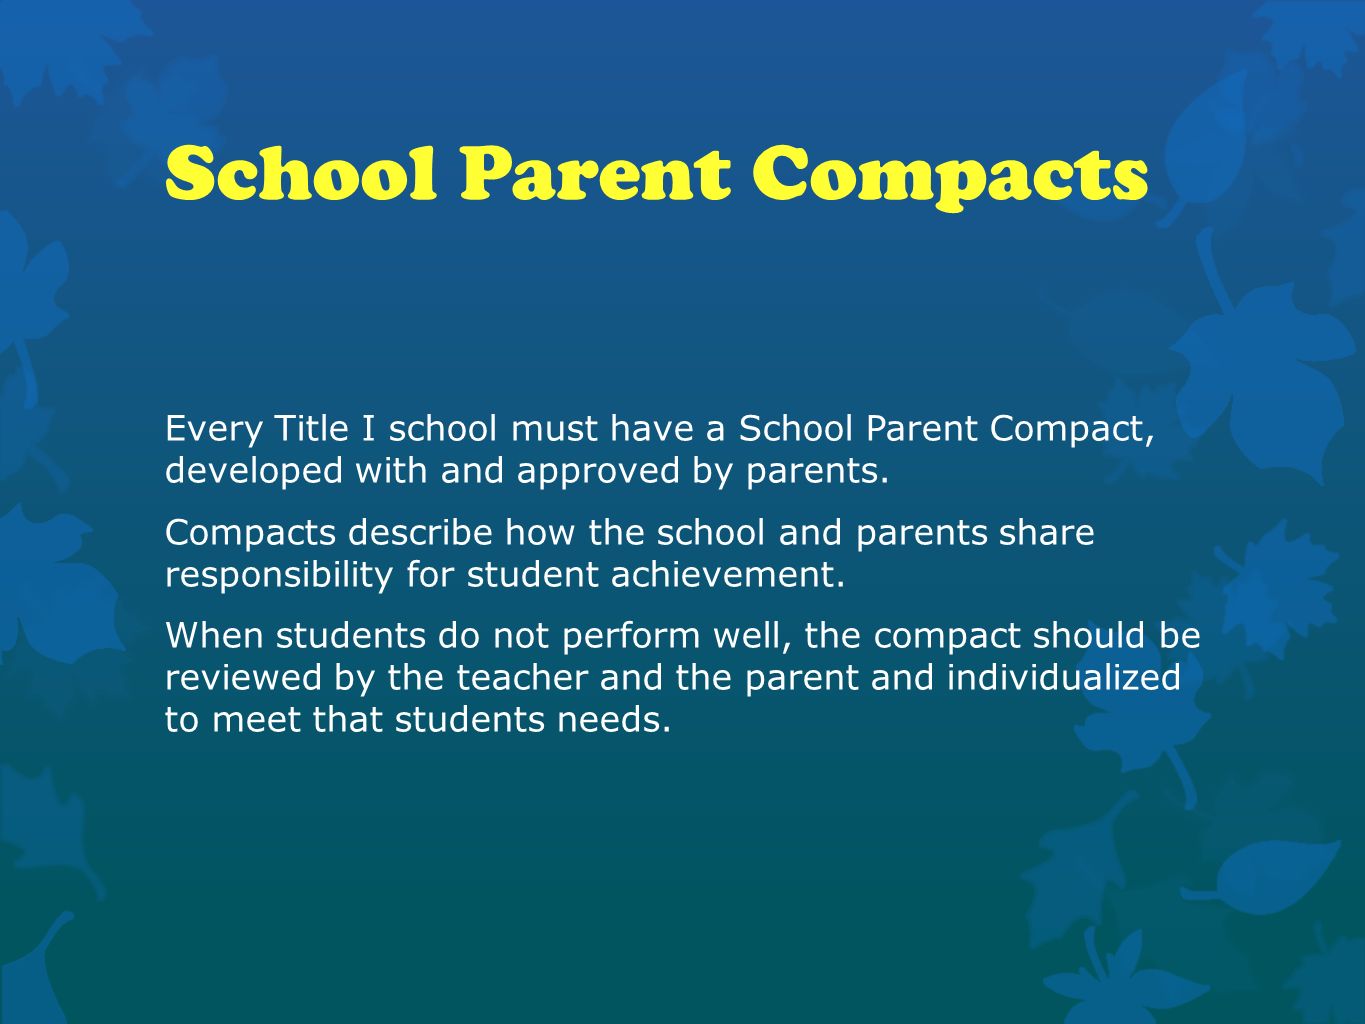 School Parent Compacts